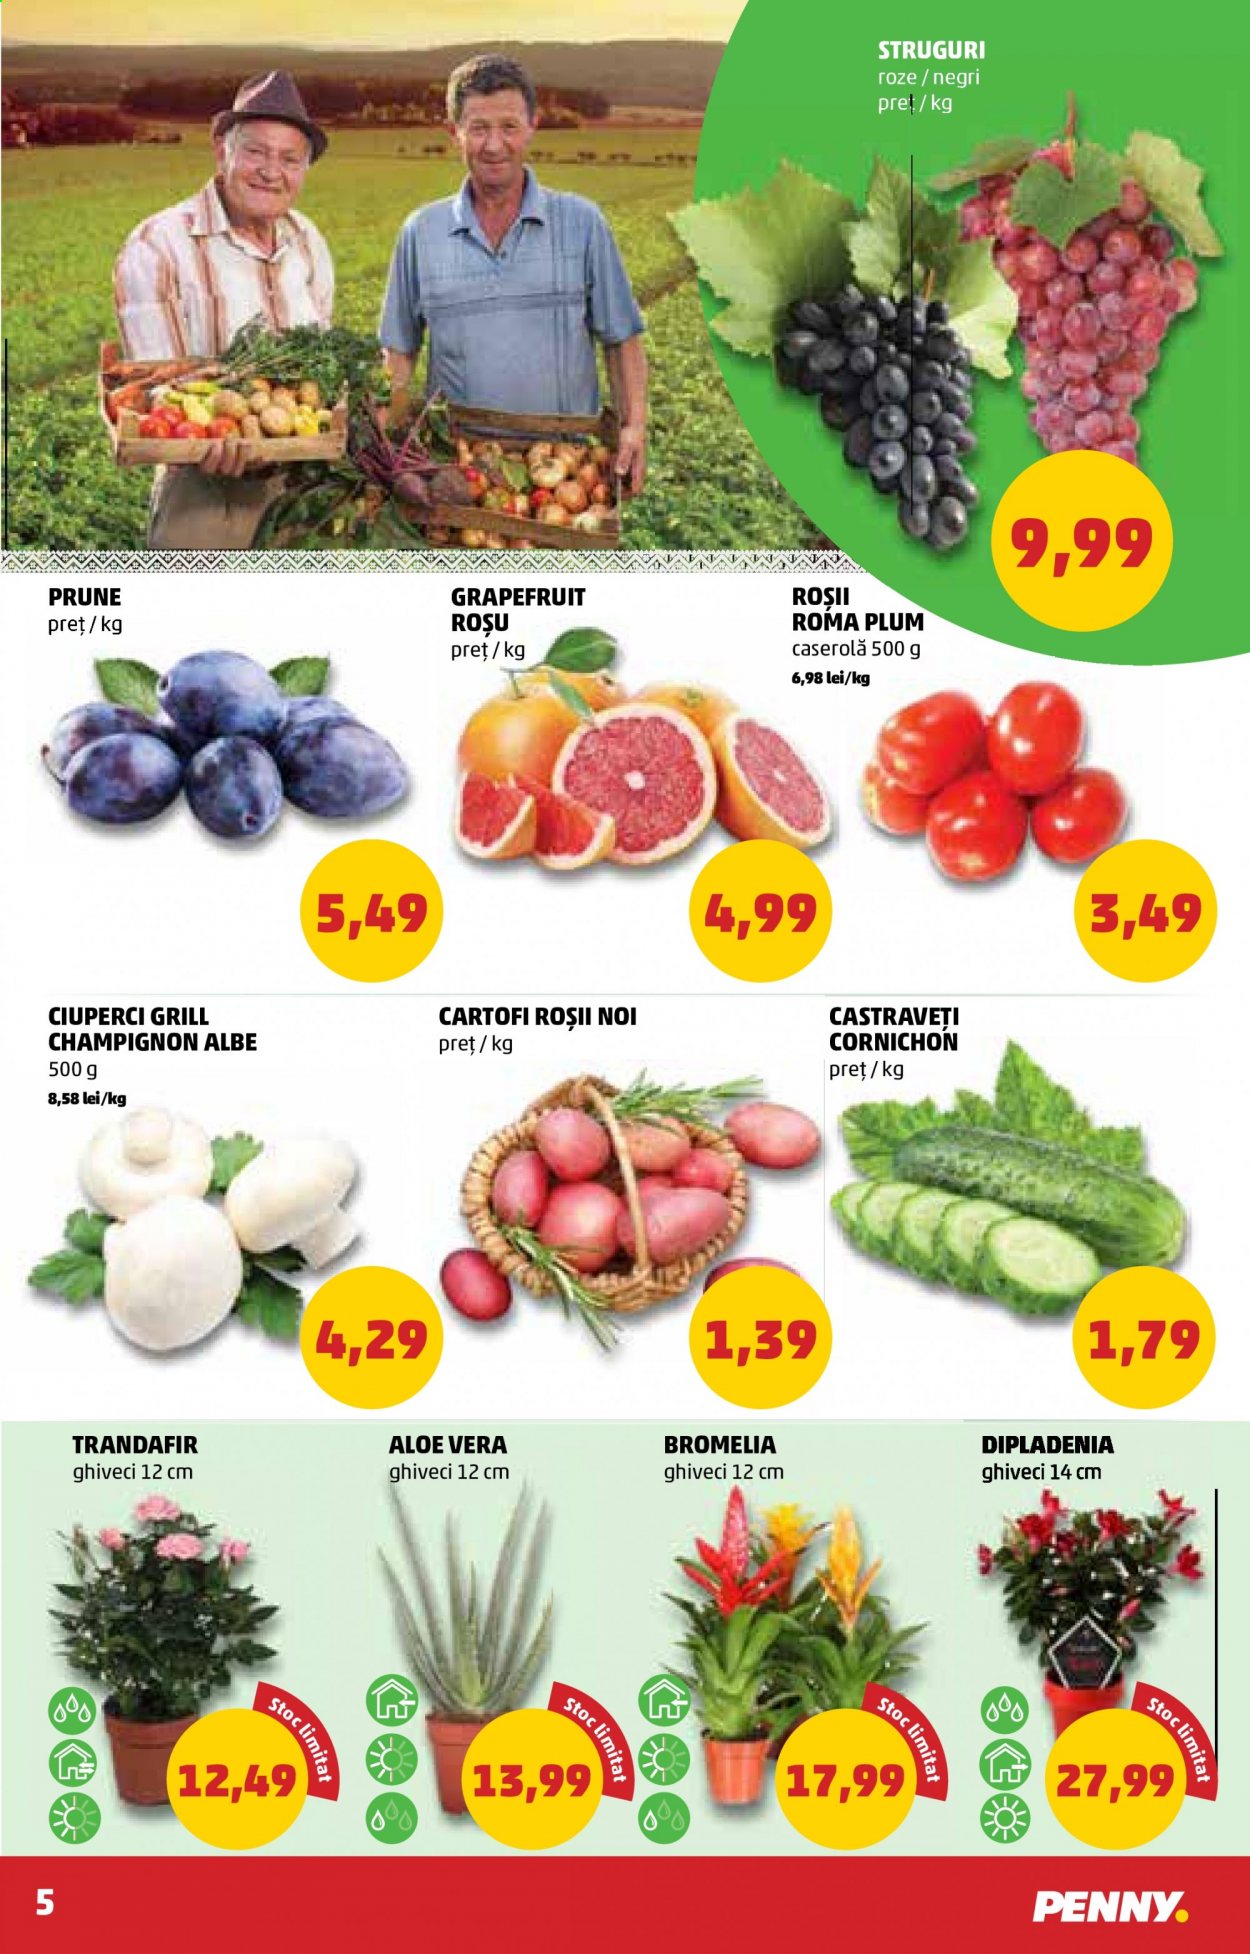 thumbnail - Cataloage PENNY - 21.07.2021 - 27.07.2021 - Produse în vânzare - ciuperca, cartofi, rosii cherry, roșie, prune, struguri, struguri roze, castraveți cornichon, castravețe, aloe vera, ghiveci. Pagina 5.